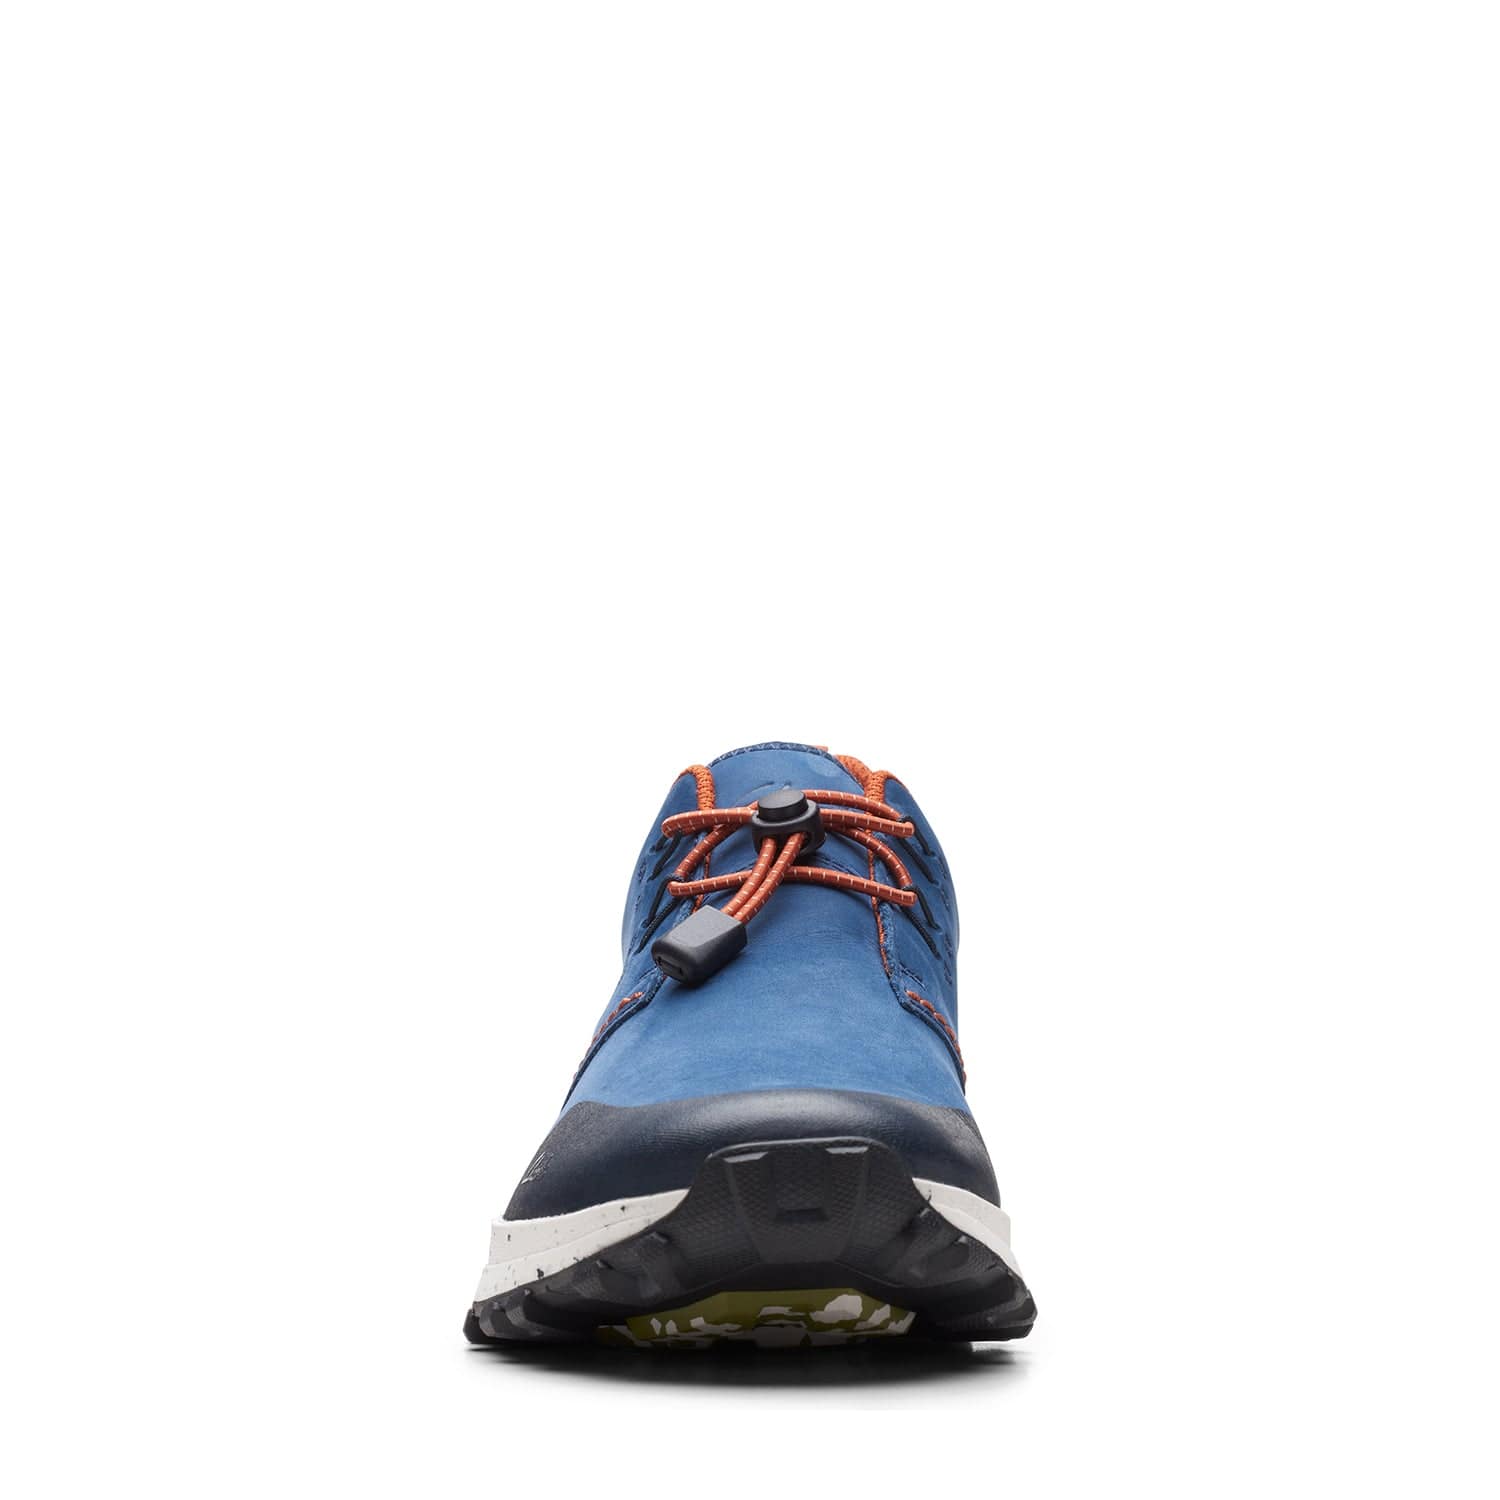 Clarks Atl Trek Khan - Shoes - Blue Combi - 261660057 - G Width (Standard Fit)